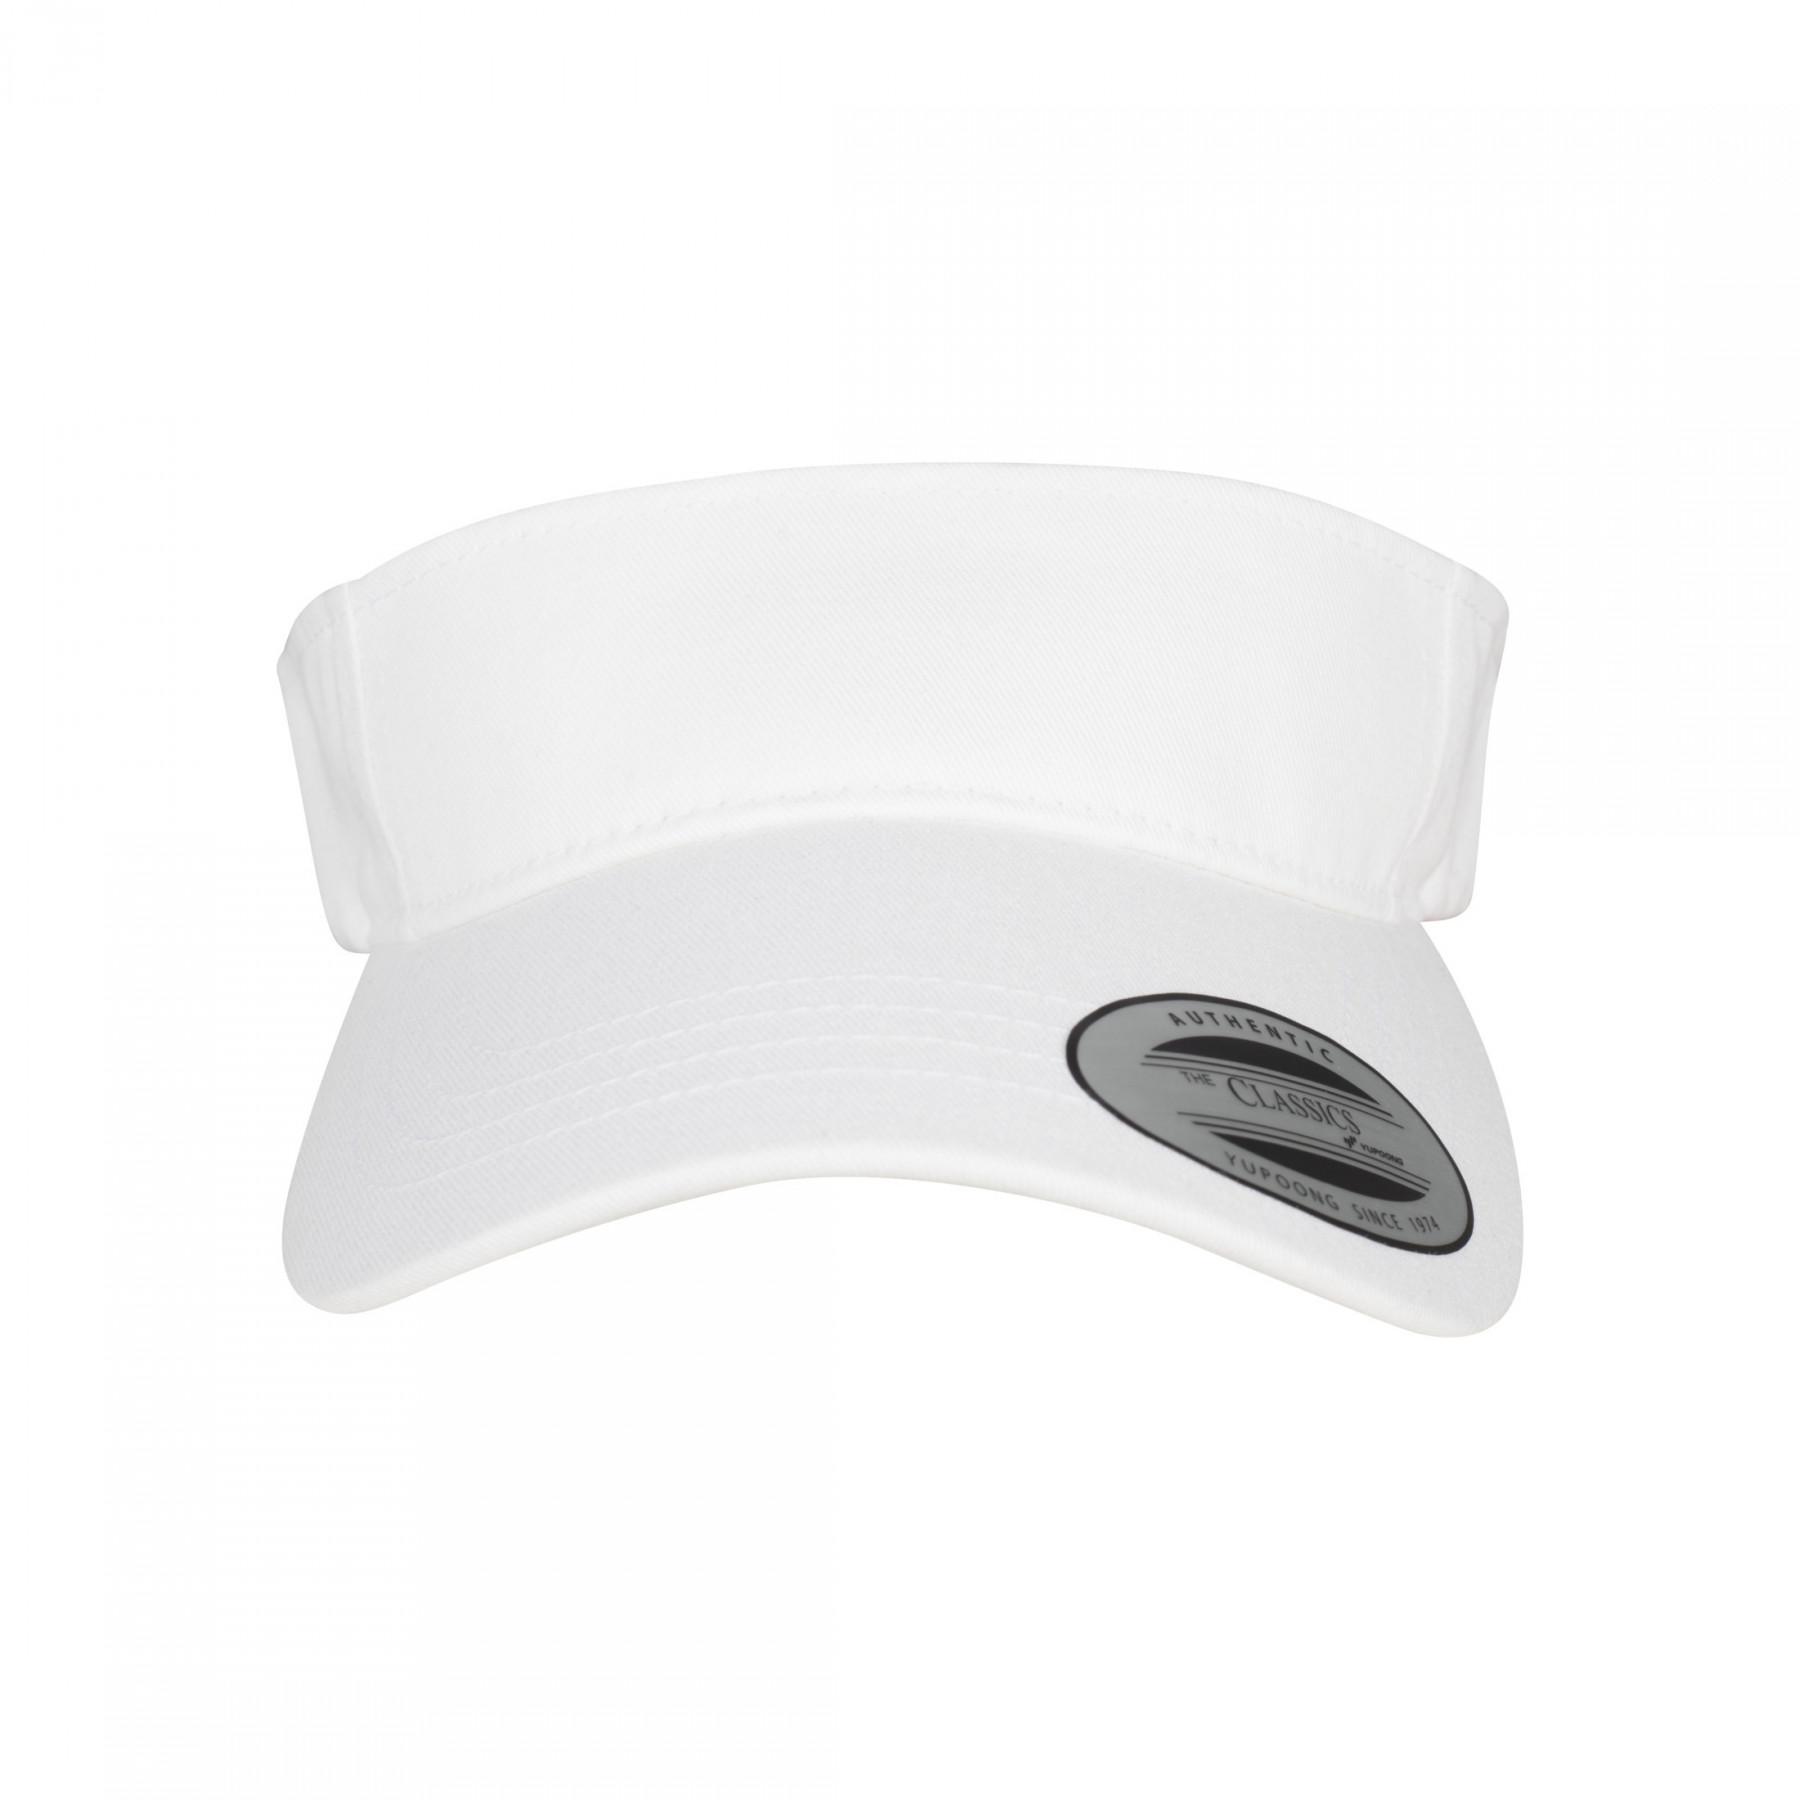 Kappe Flexfit curved visor